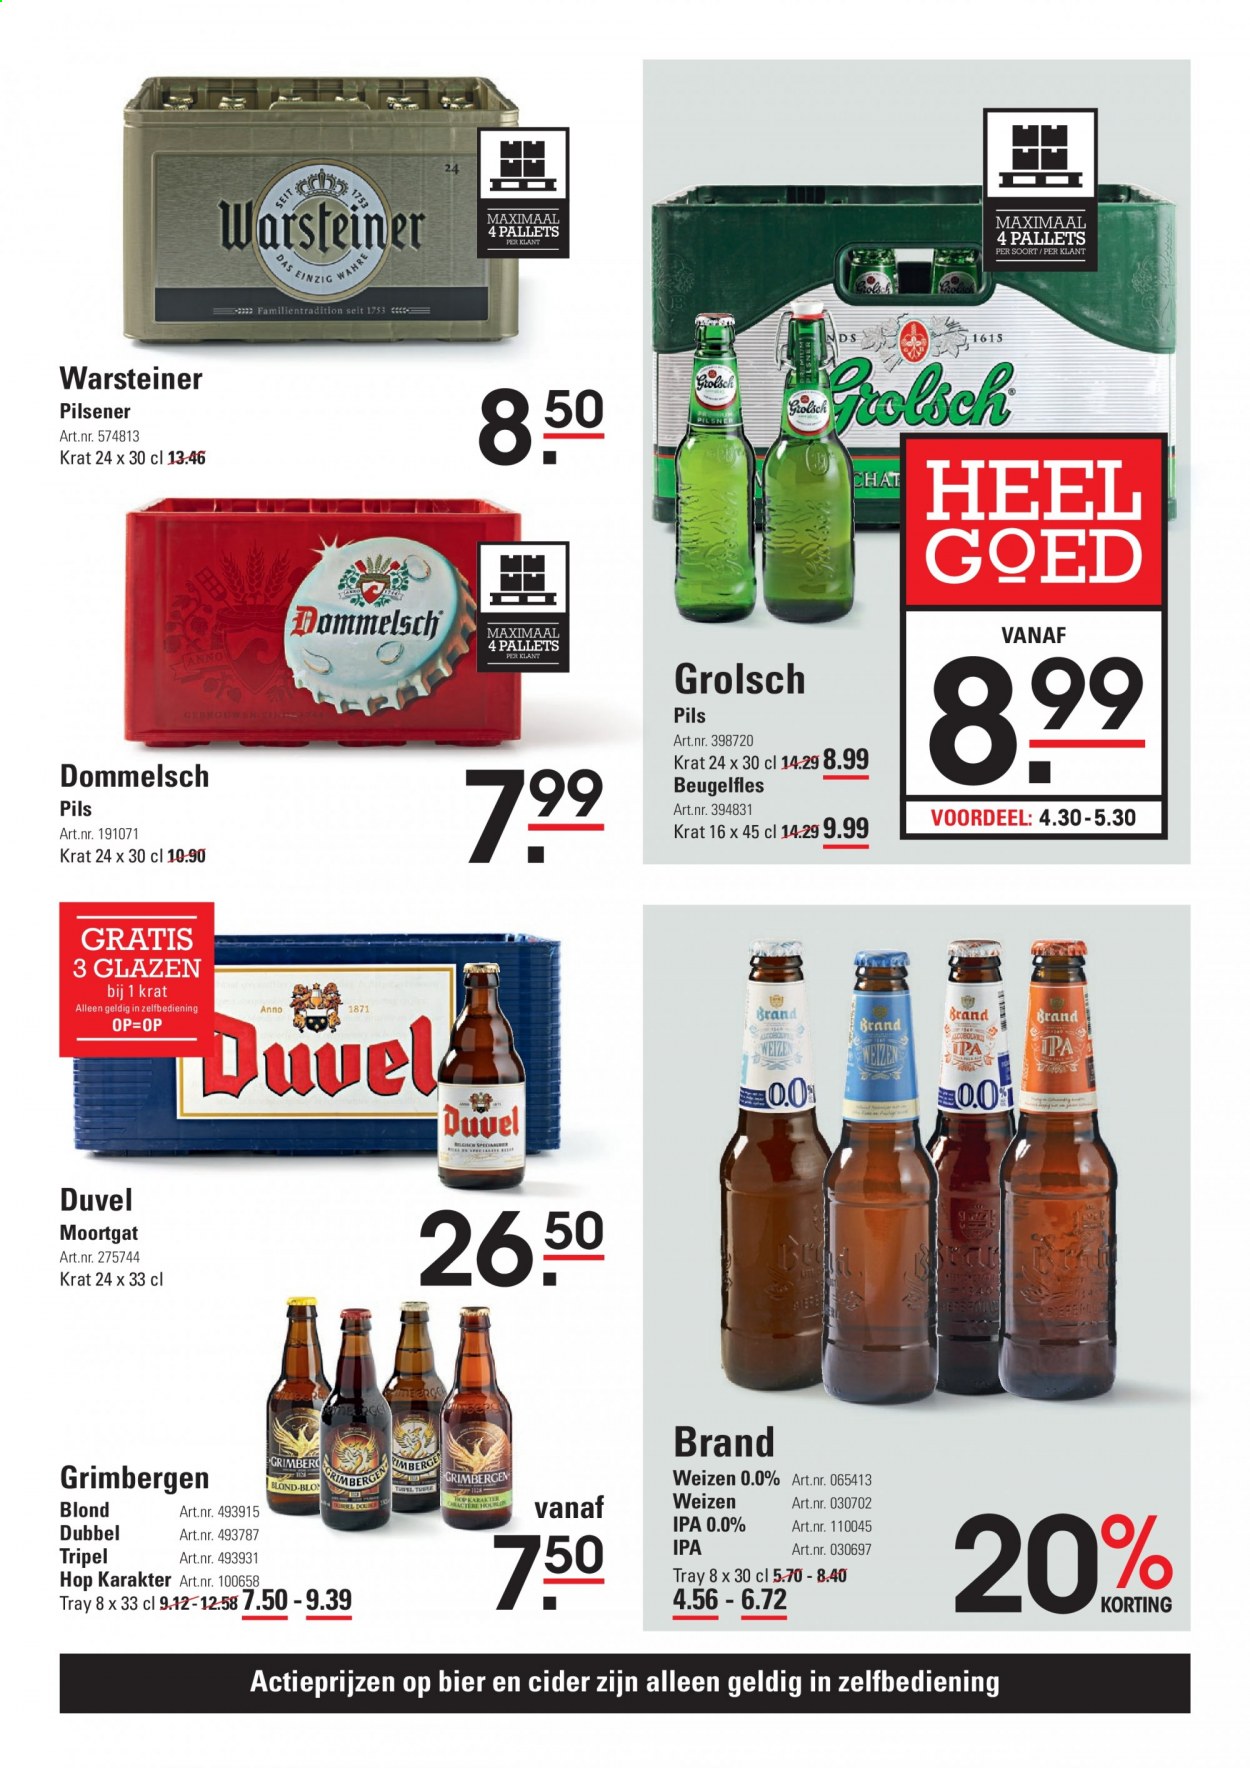 thumbnail - Sligro-aanbieding - 18-2-2021 - 8-3-2021 -  producten in de aanbieding - Warsteiner, pilsener, Grolsch, bier, cider, glazen. Pagina 11.